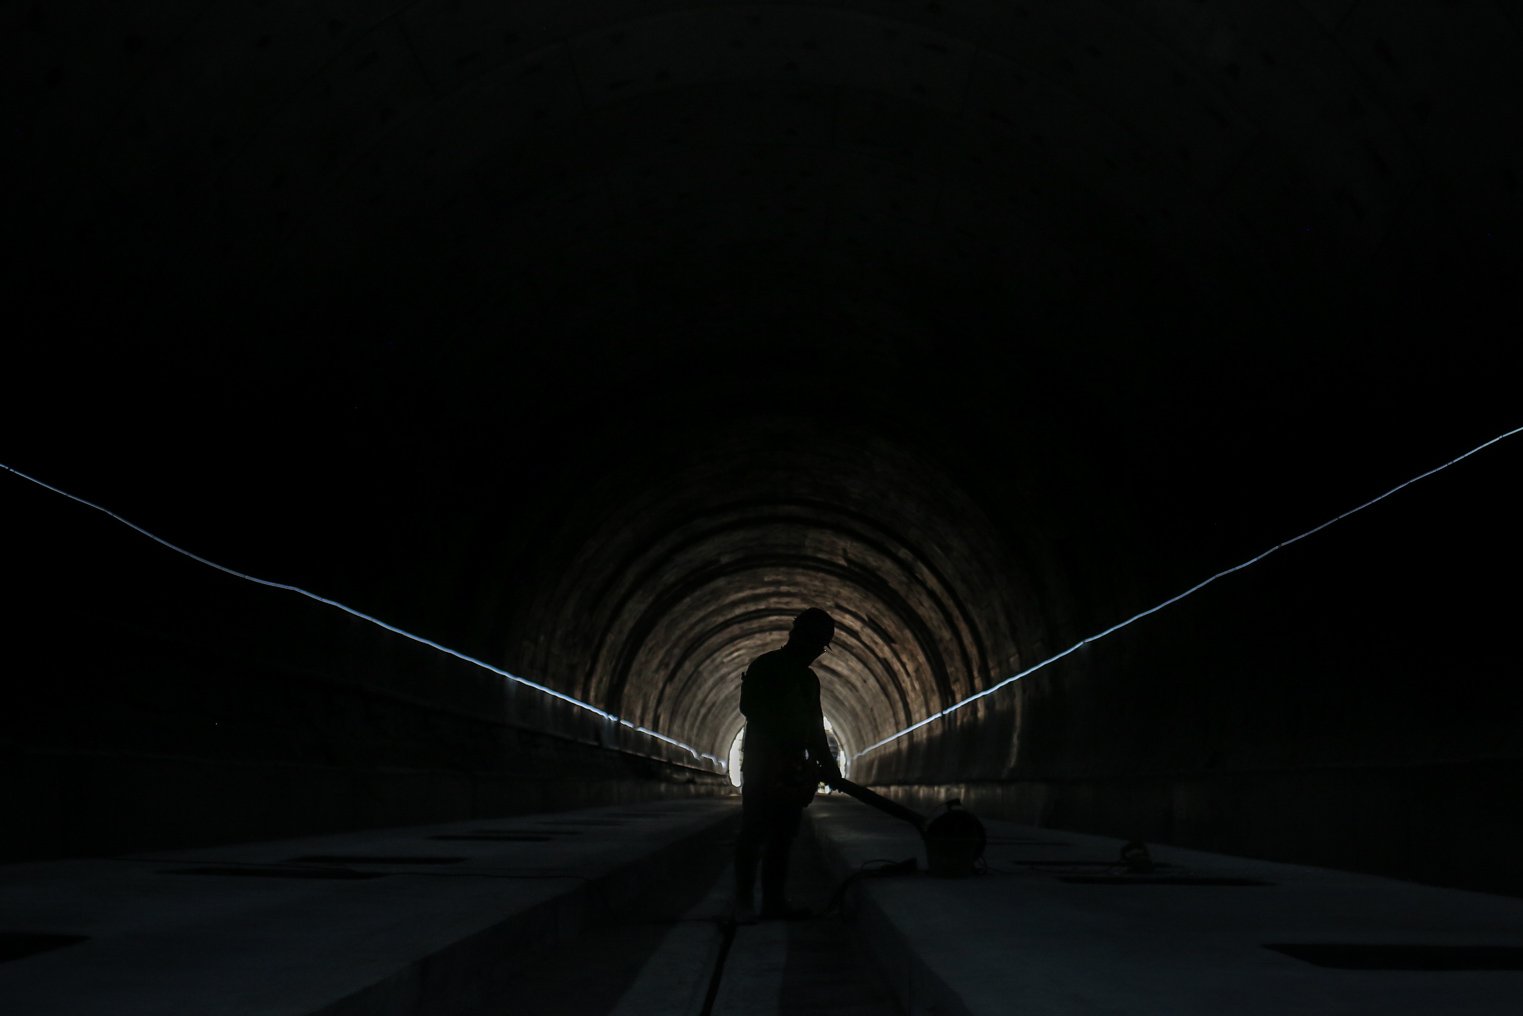 Pekerja mengerjakan proyek Tunnel 1 Halim Kereta Cepat Jakarta Bandung sepanjang 1.885 meter atau 1,8 kilometer yang berlokasi di Jalan Tol Jakarta-Cikampek KM 5+500, Kamis (27/1/2022). Pembangunan proyek Tunnel 1 ini dilakukan menggunakan mesin bor atau Tunnel Boring Machine (TBM) mesin bor pembuat terowongan yang didatangkan langsung dari negeri China, untuk membuat struktur Tunnel 1 Kereta Cepat Jakarta Bandung. TBM yang digunakan memiliki diameter 13,23 meter dengan panjang 102,3 meter, berat 2.600 ton.